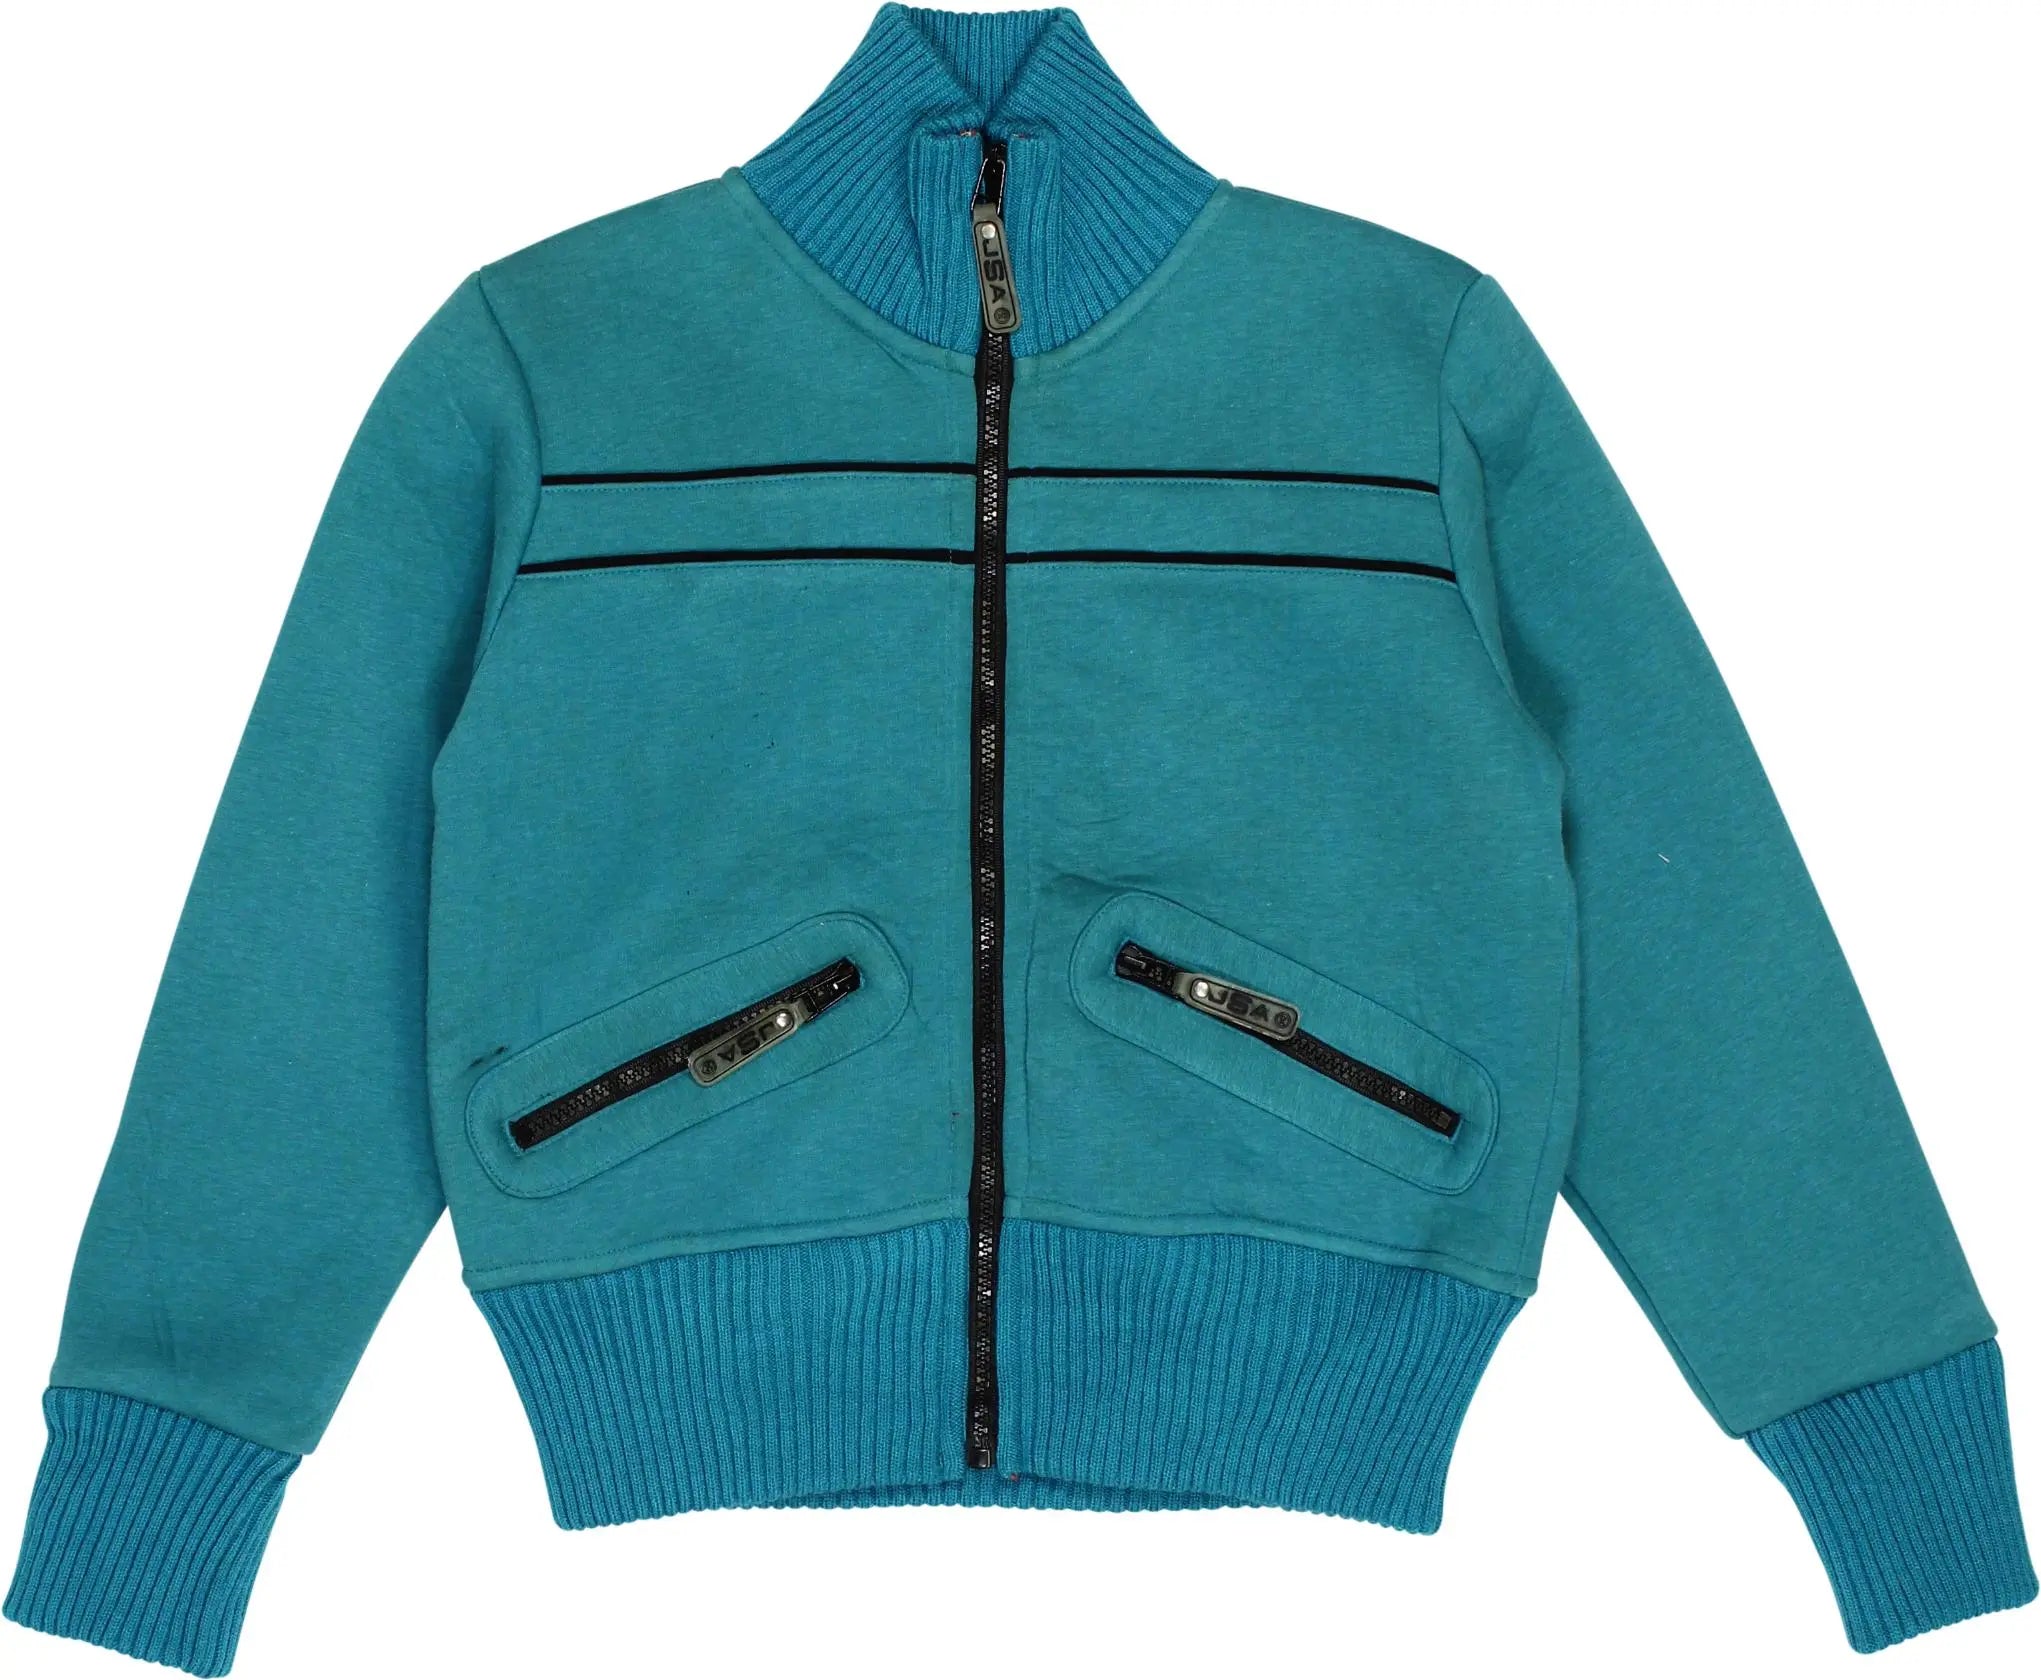 JSA - Blue Jacket- ThriftTale.com - Vintage and second handclothing